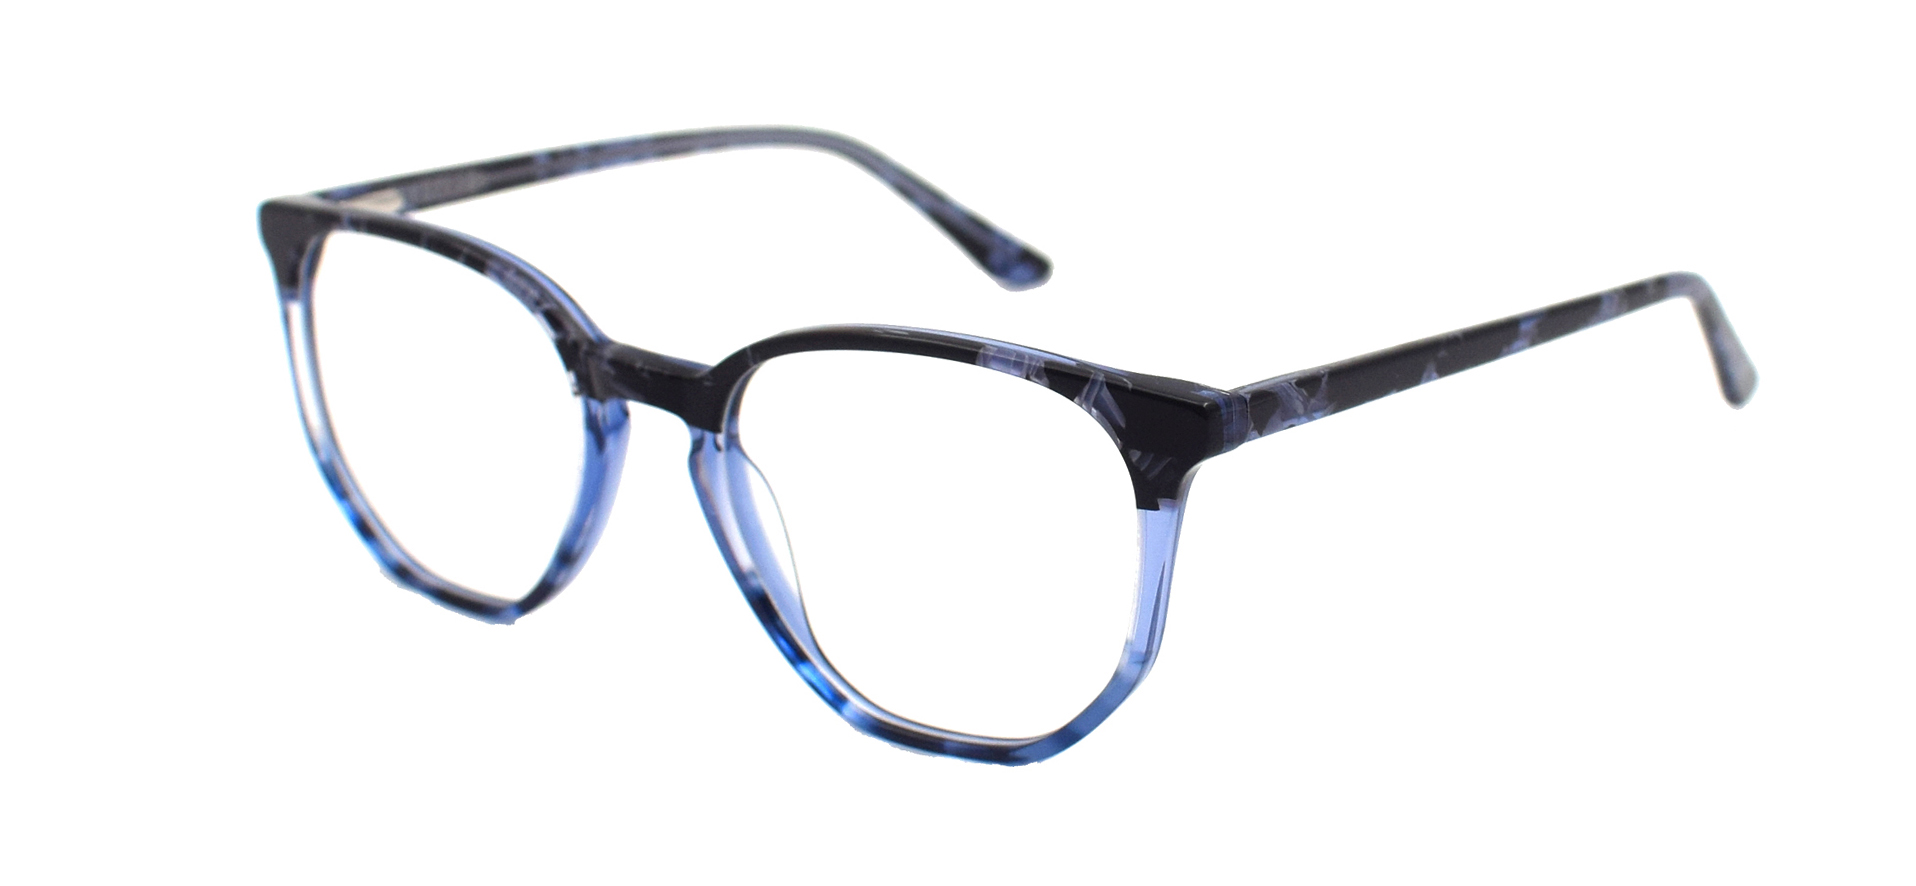 نظارات الموضة الضوء الأزرق